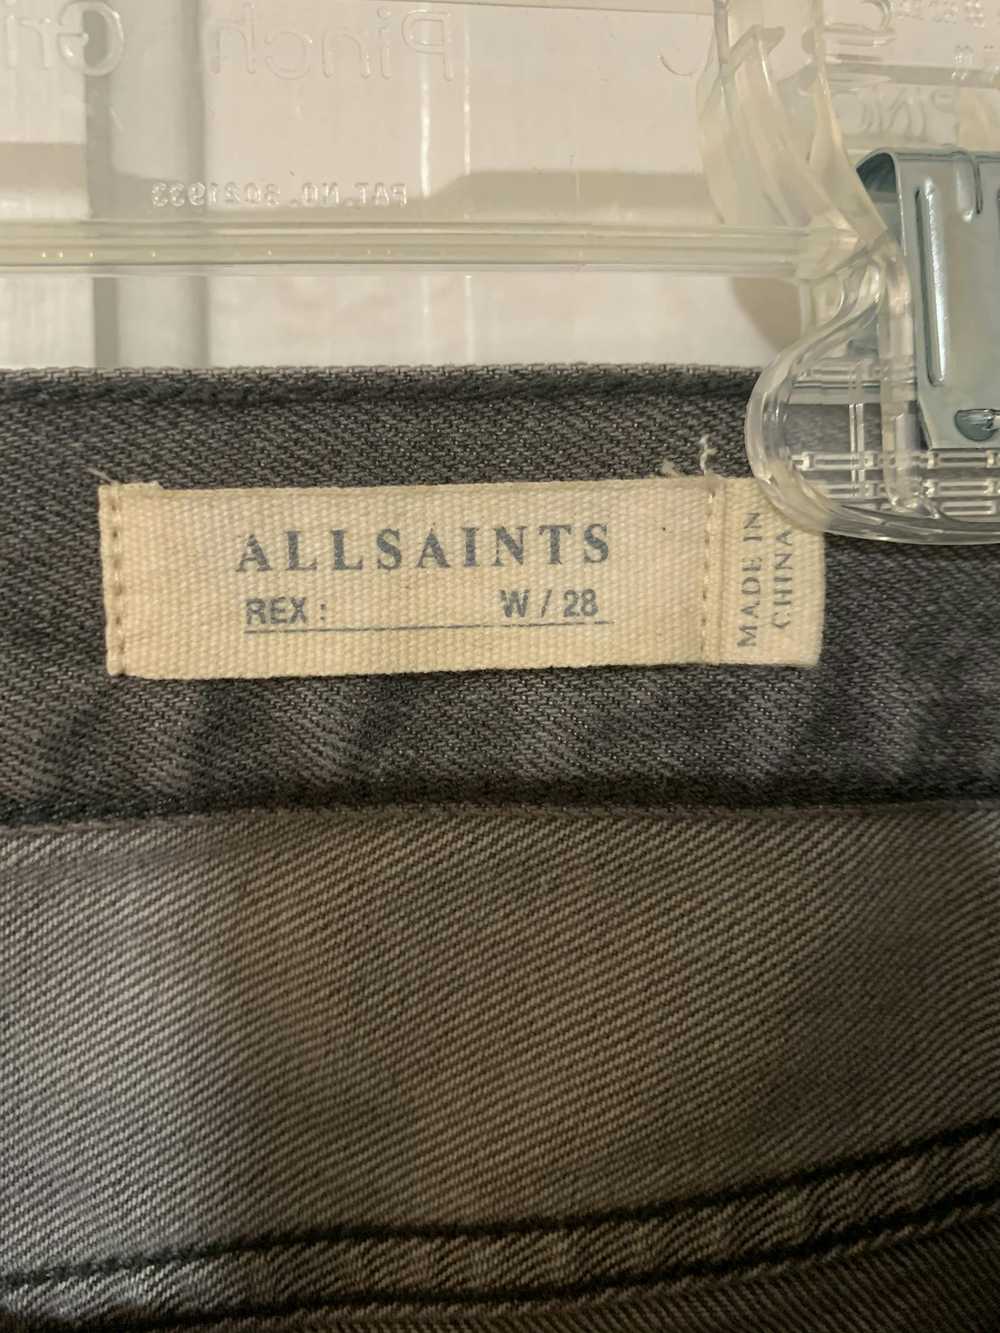 Allsaints Boise Rex Slim Fit Jeans - image 4